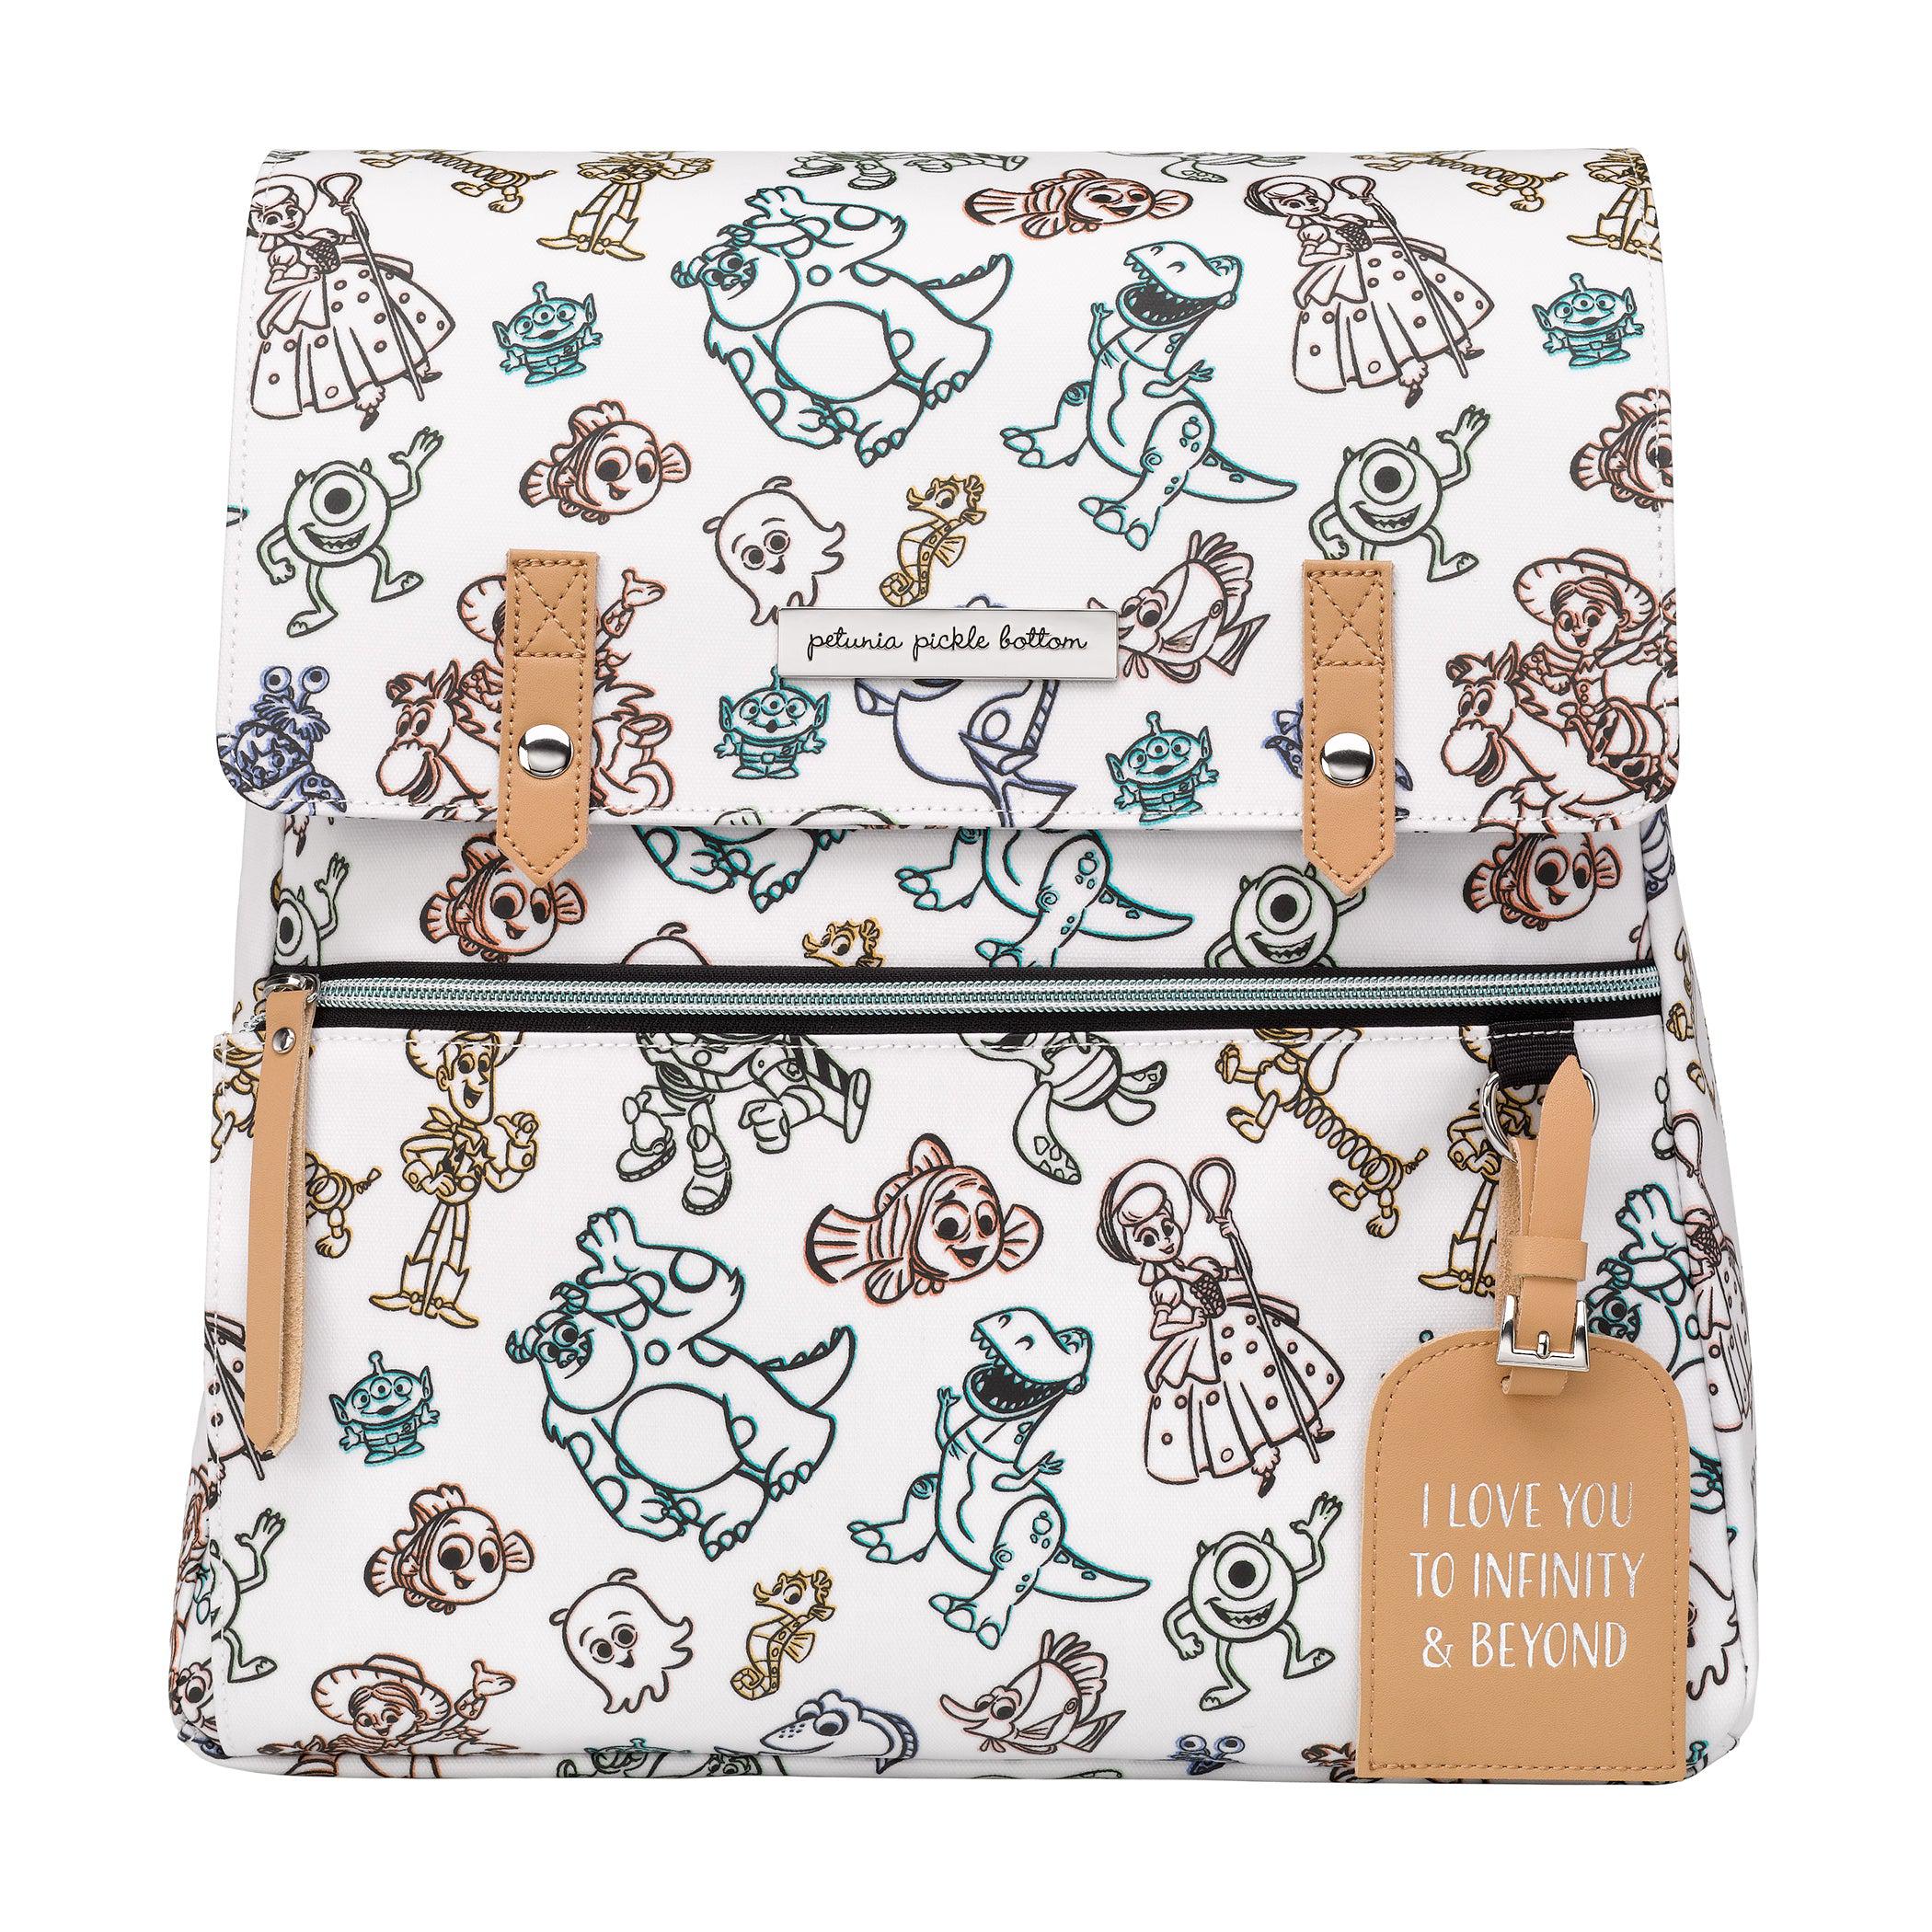 Petunia Pickle Bottom Cinderella Meta Backpack | Disney Diaper Bag